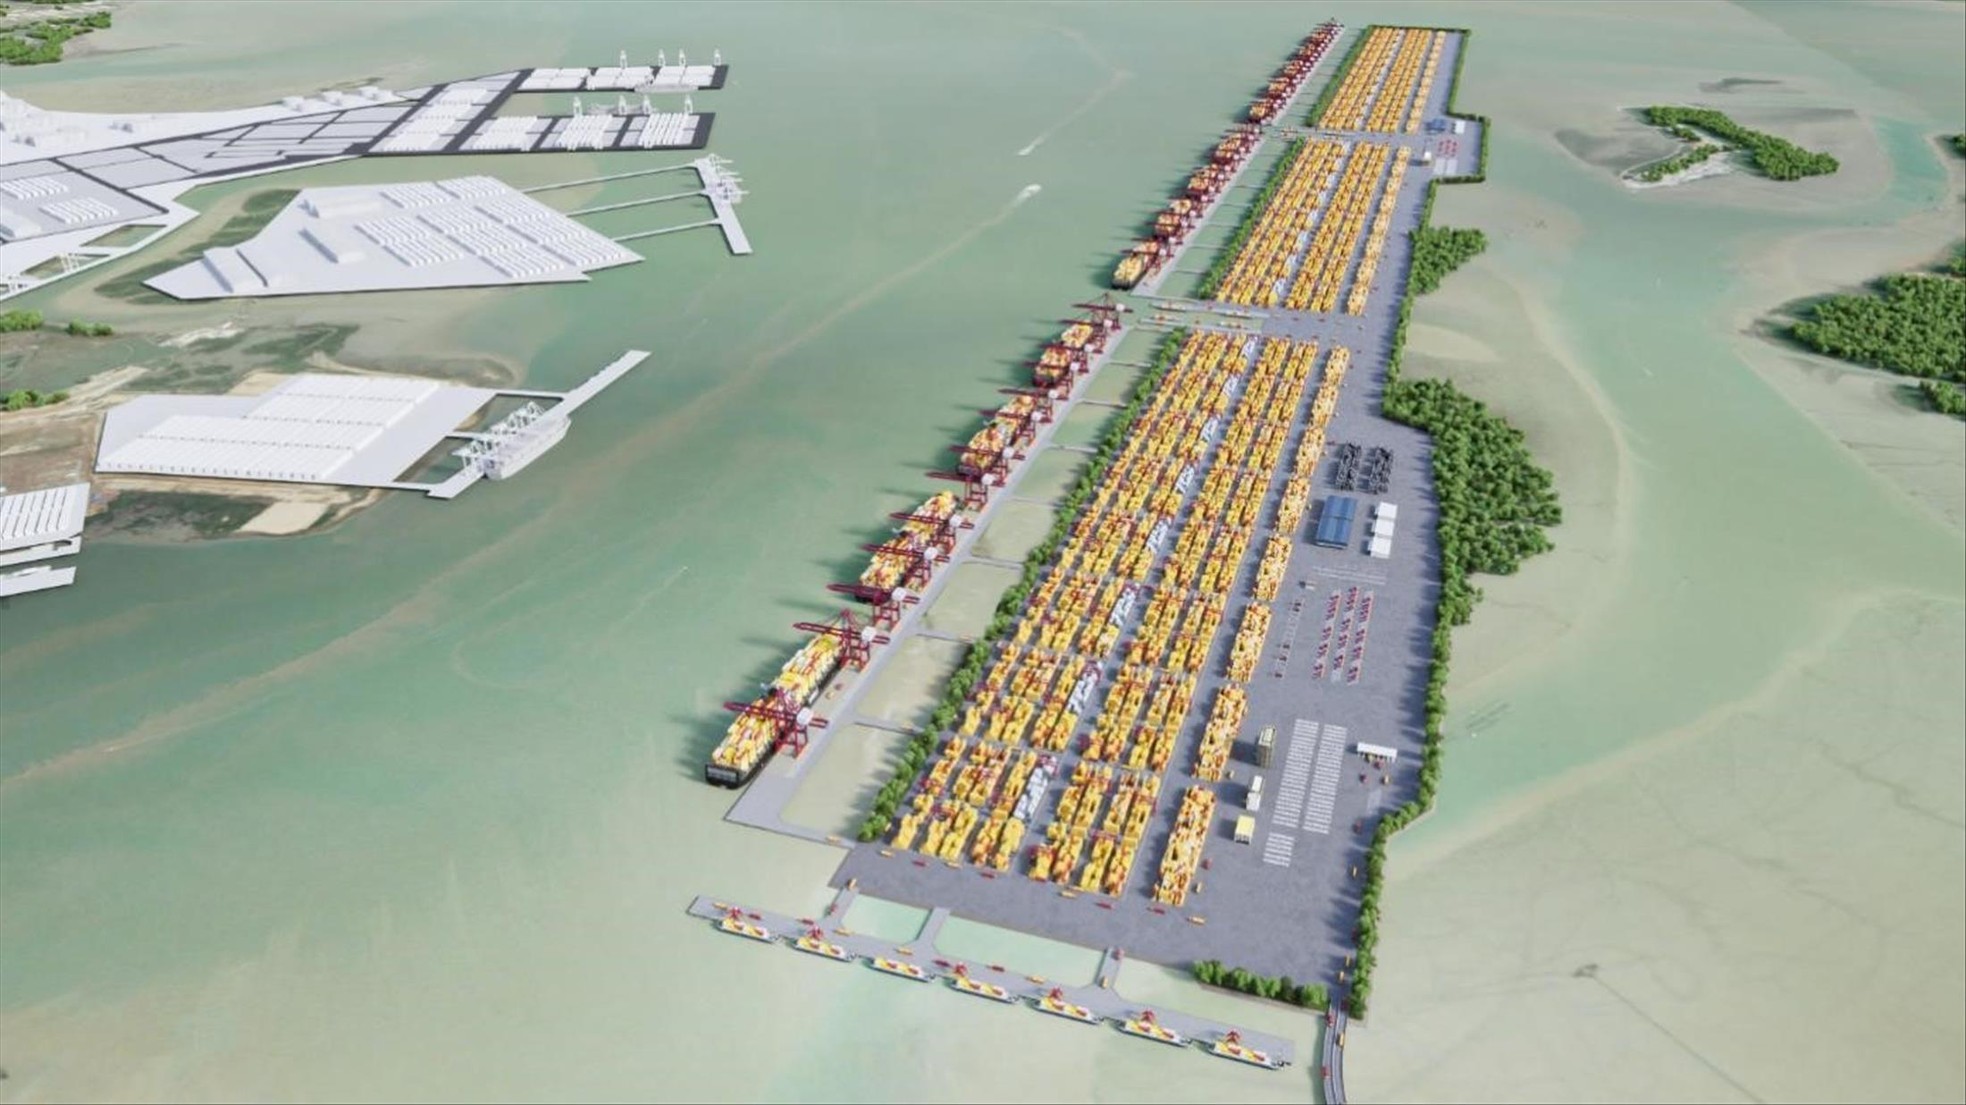 Đề án siêu cảng 5,4 tỷ USD ở Cần Giờ: Cân nhắc hài hòa lợi ích - Ảnh 1.